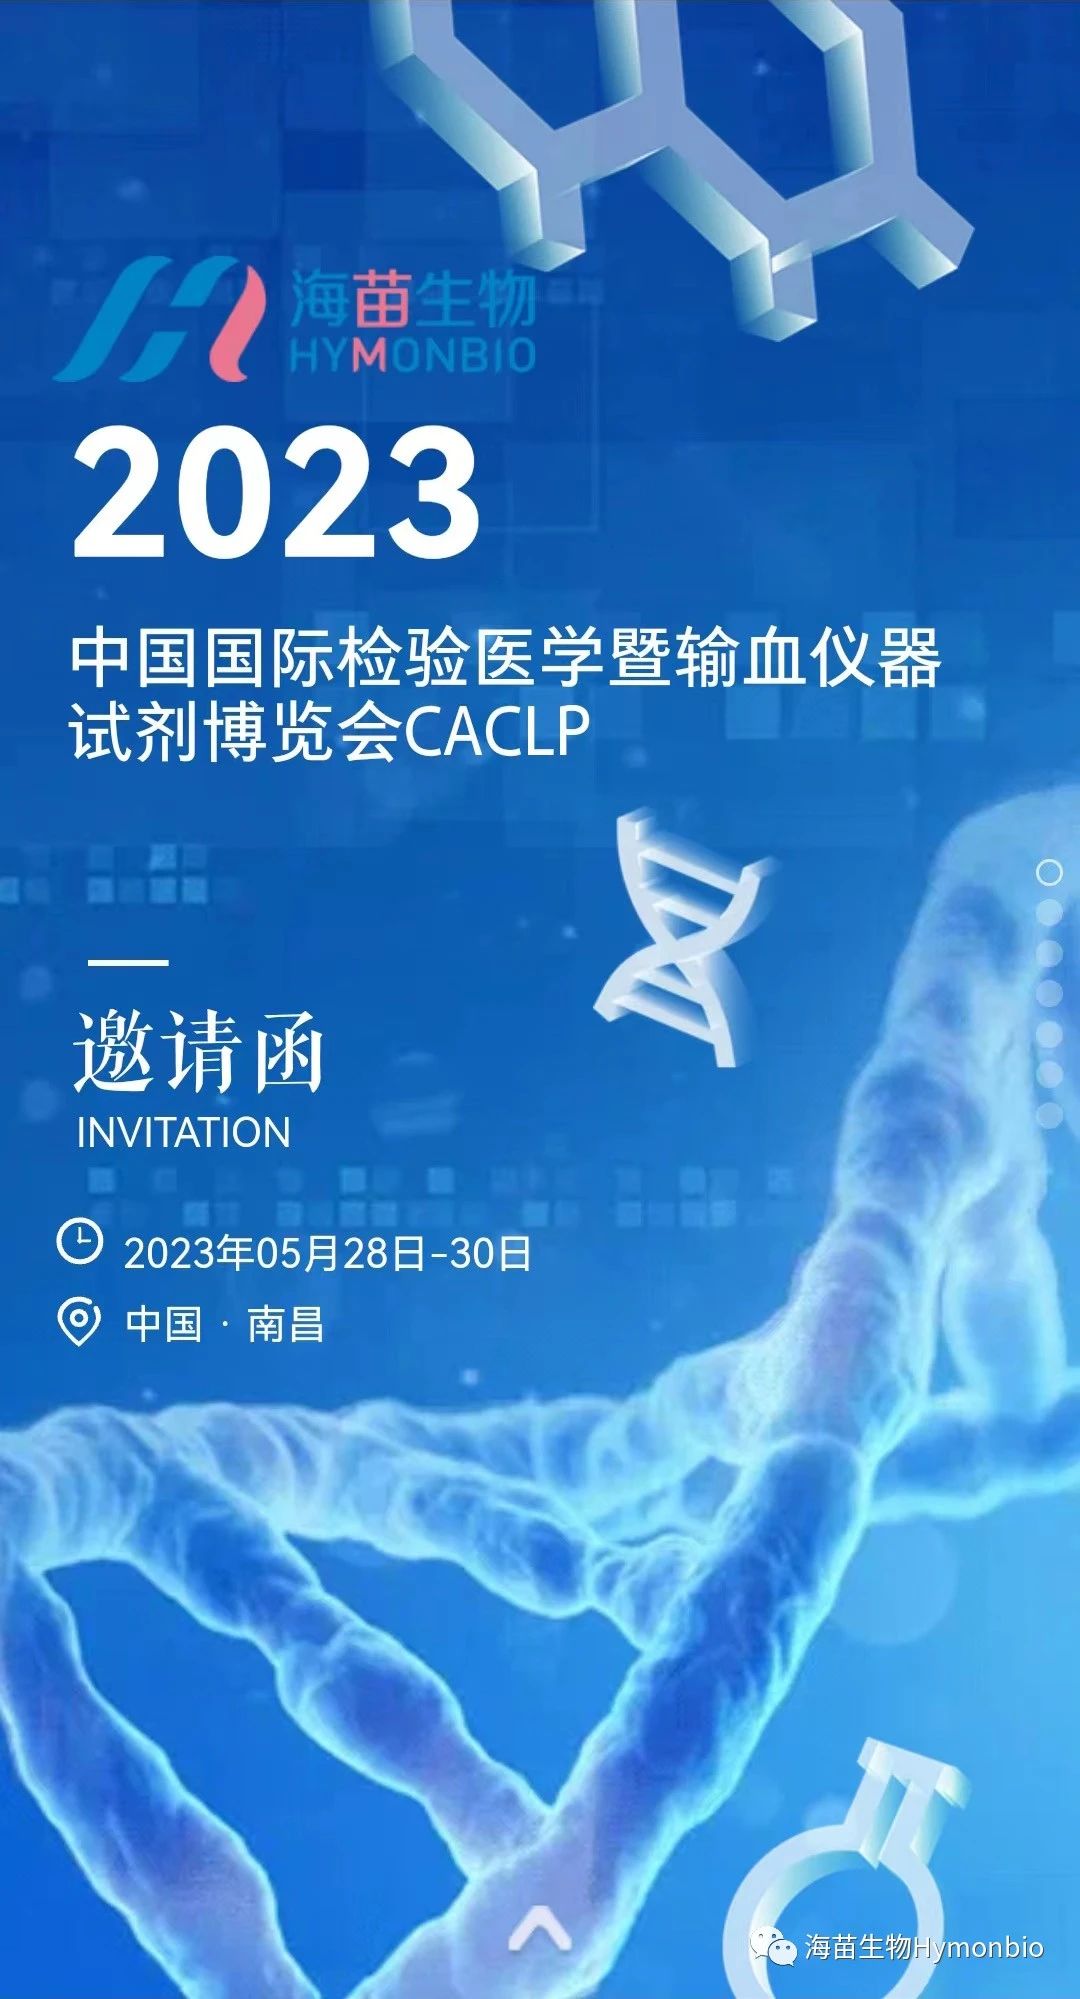 HymonBio lädt Sie zum CACLP 2023 in Nanchang ein